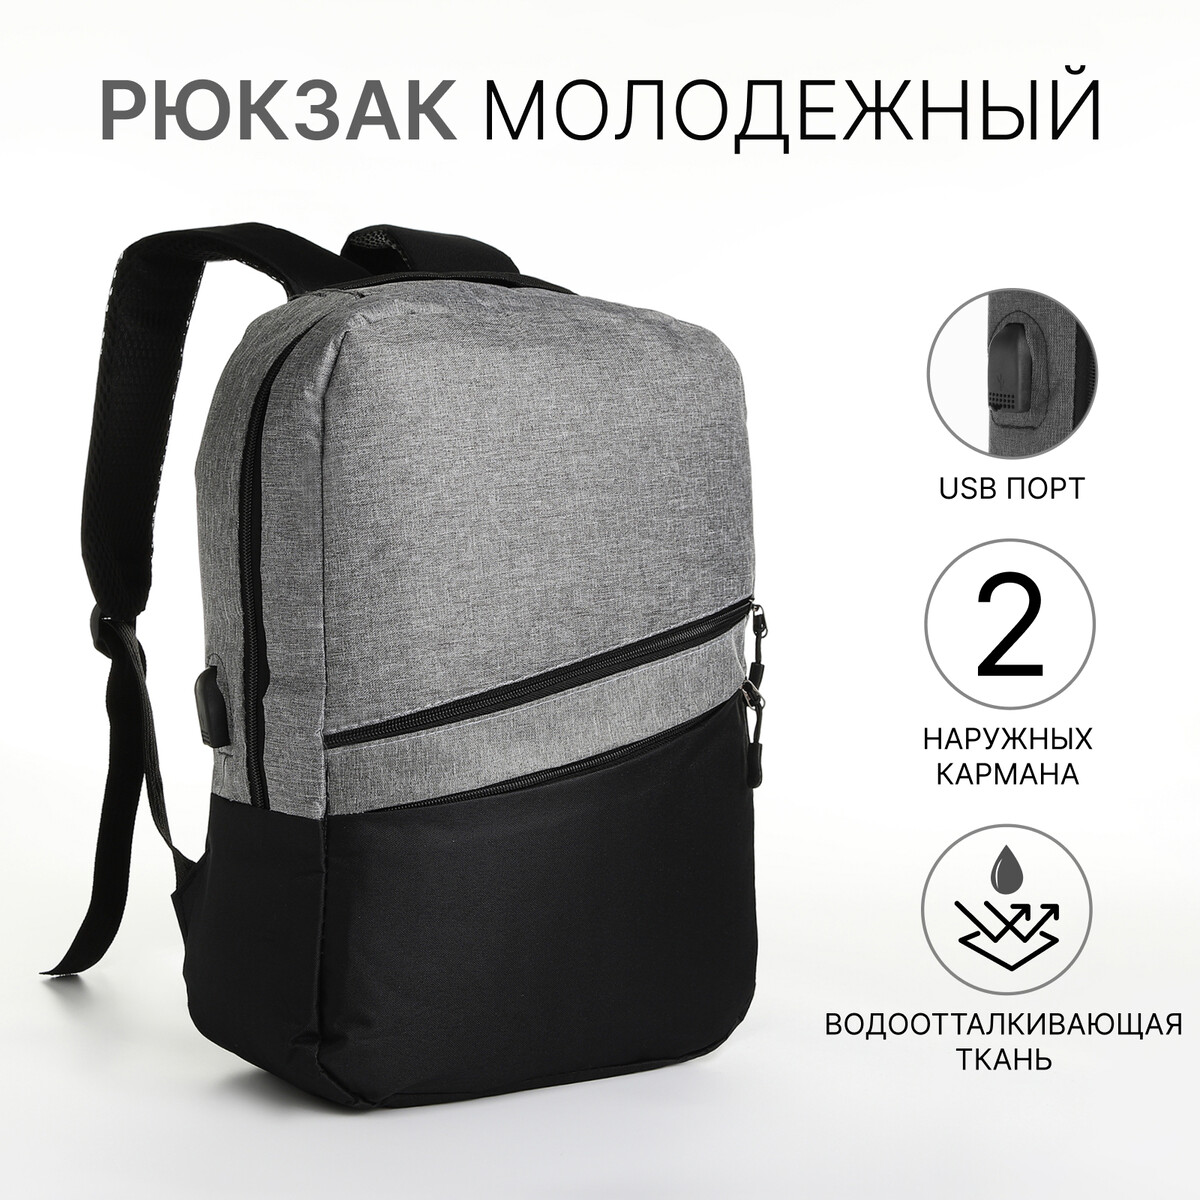 Рюкзак городской с usb из текстиля на молнии, 2 кармана, цвет черный/серый рюкзак городской с usb зарядкой sebar